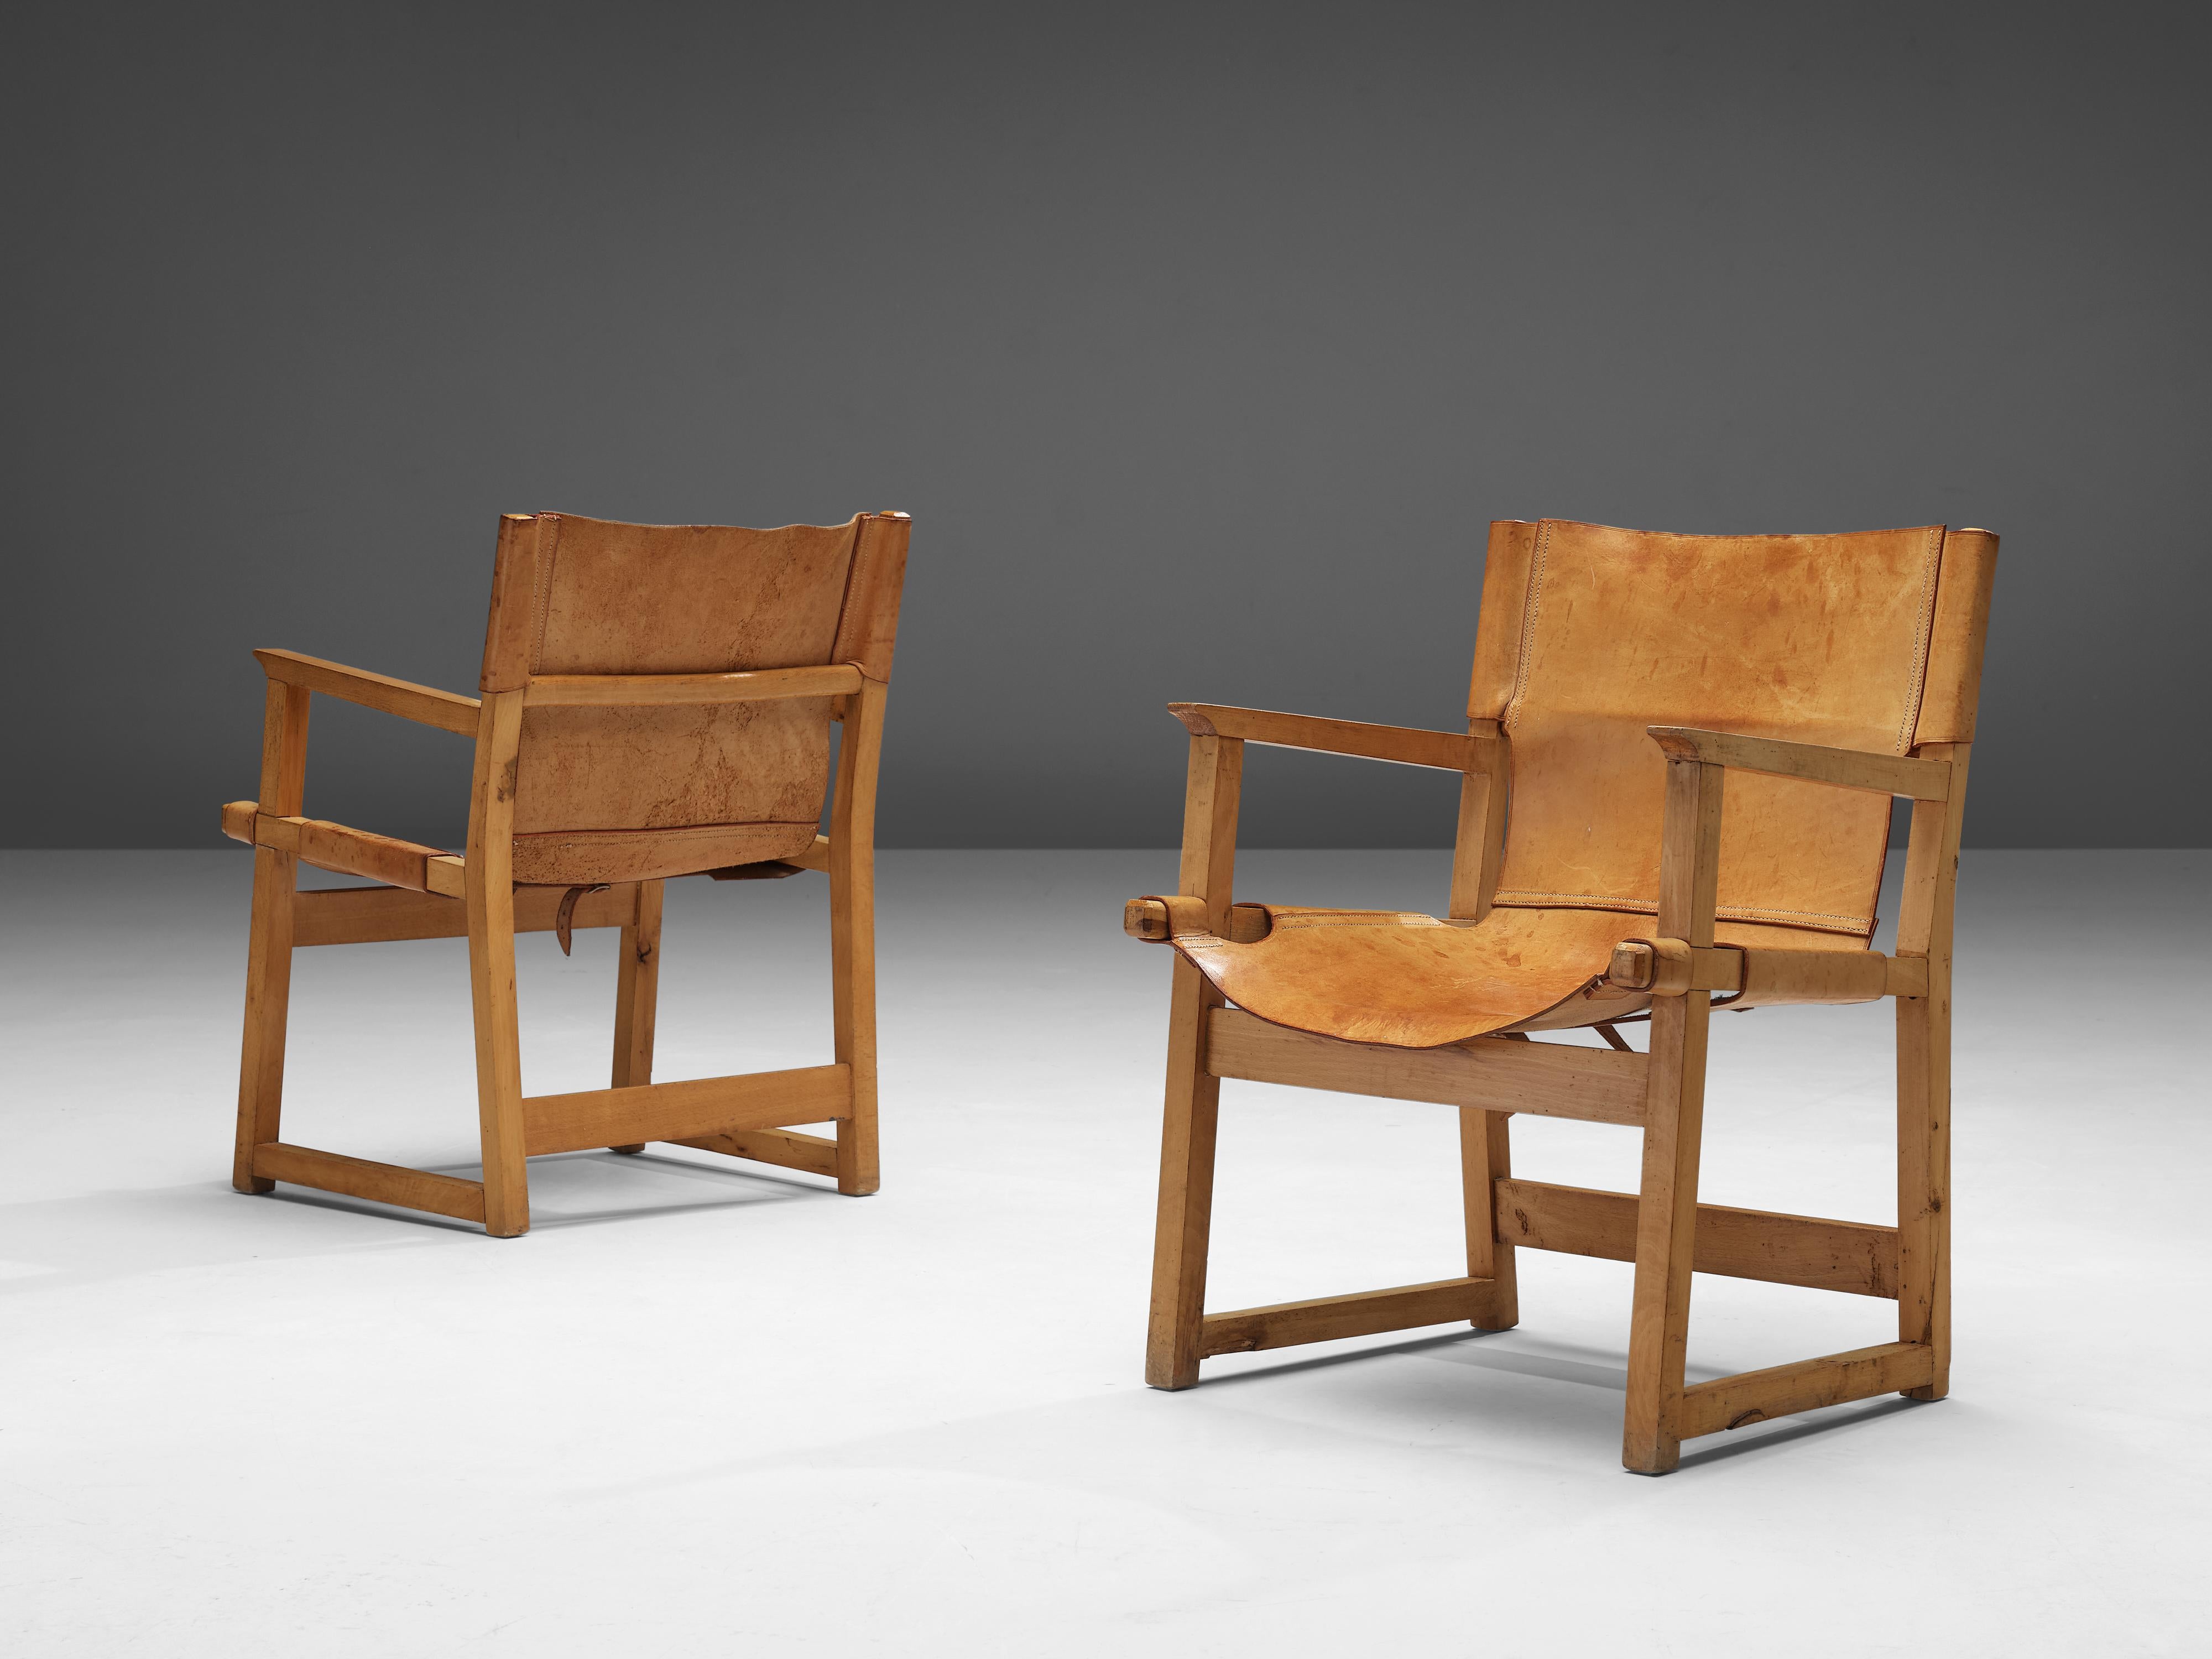 Paco Muñoz, paire de fauteuils, cuir, hêtre, Espagne, années 1950

Fauteuils Safari ou 